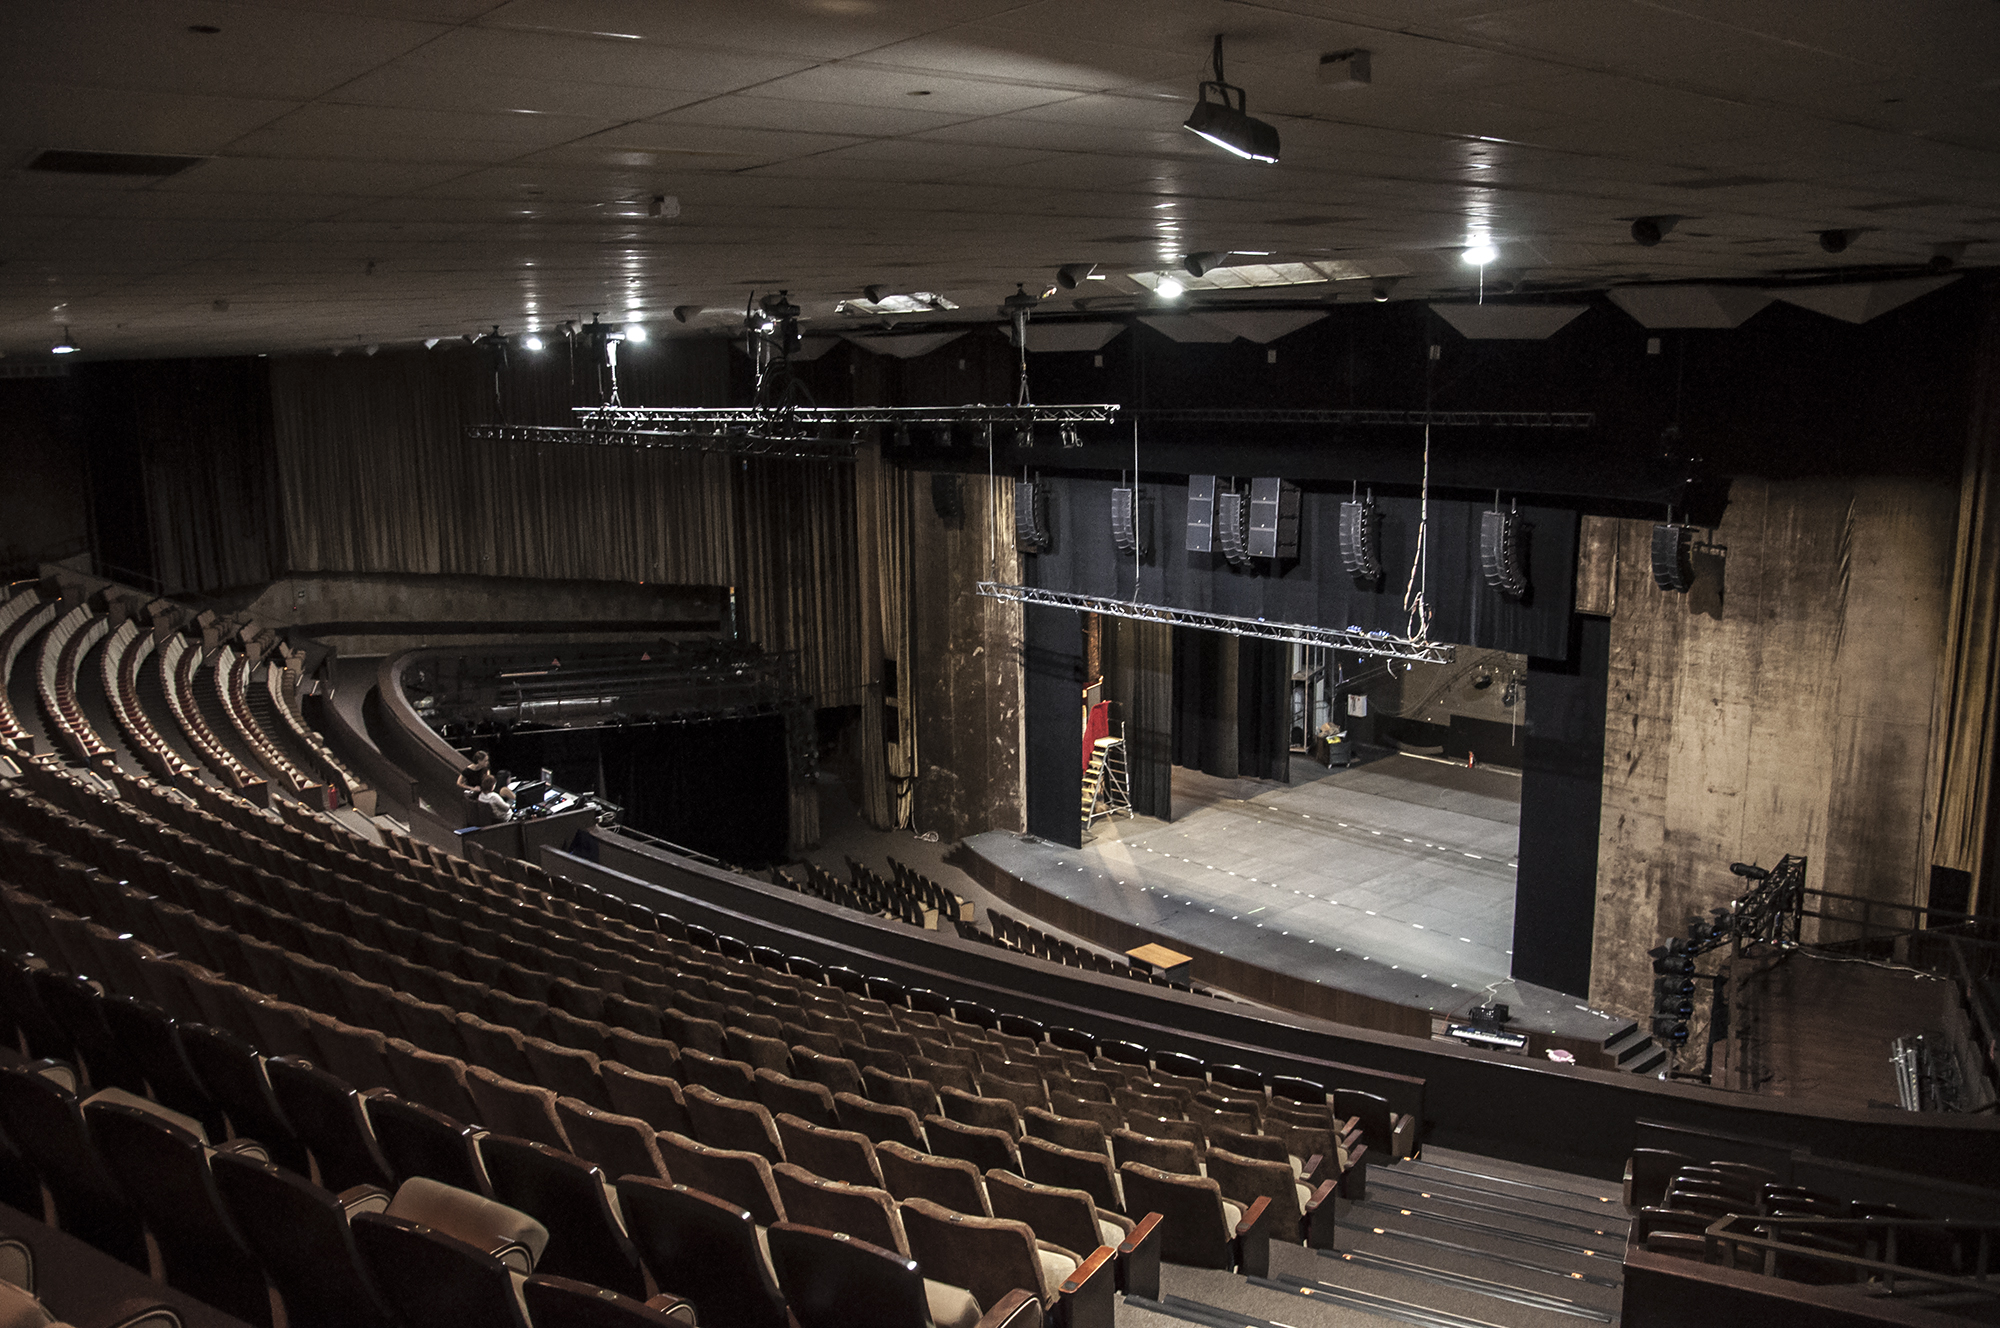 Театр мюзикла фото зала на пушкинской с местами